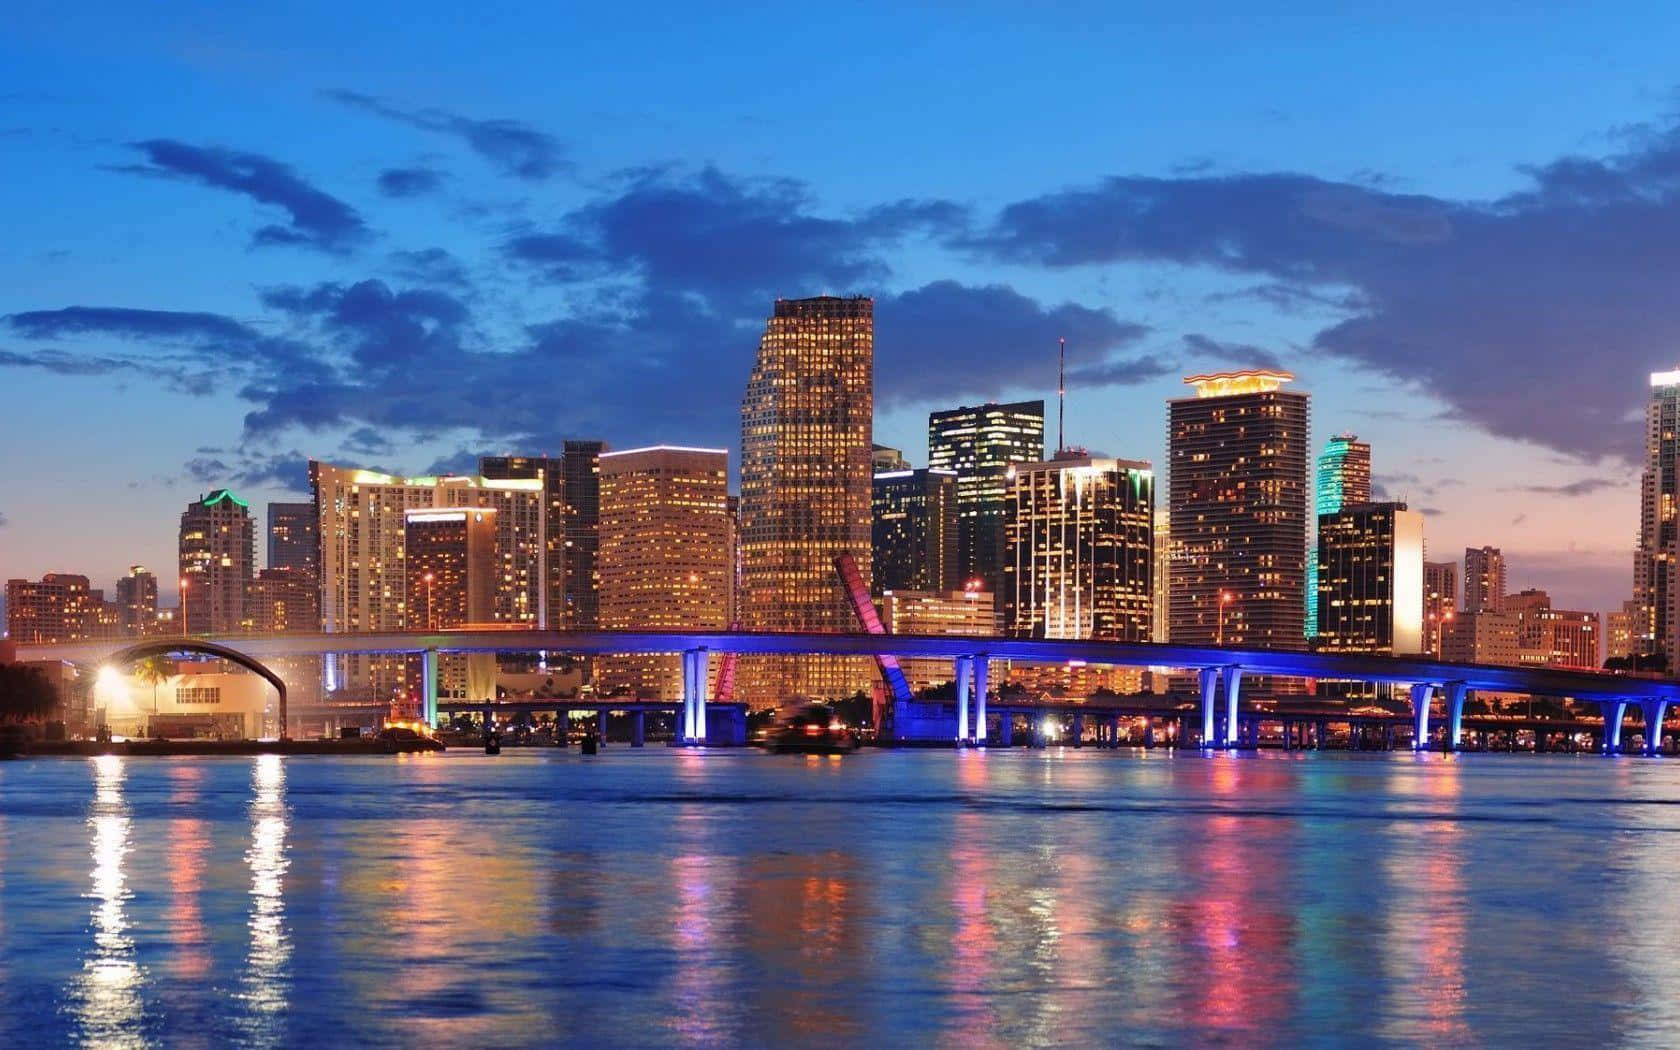 Esplorala Vibrante Città Di Miami E Il Suo Bellissimo Skyline.